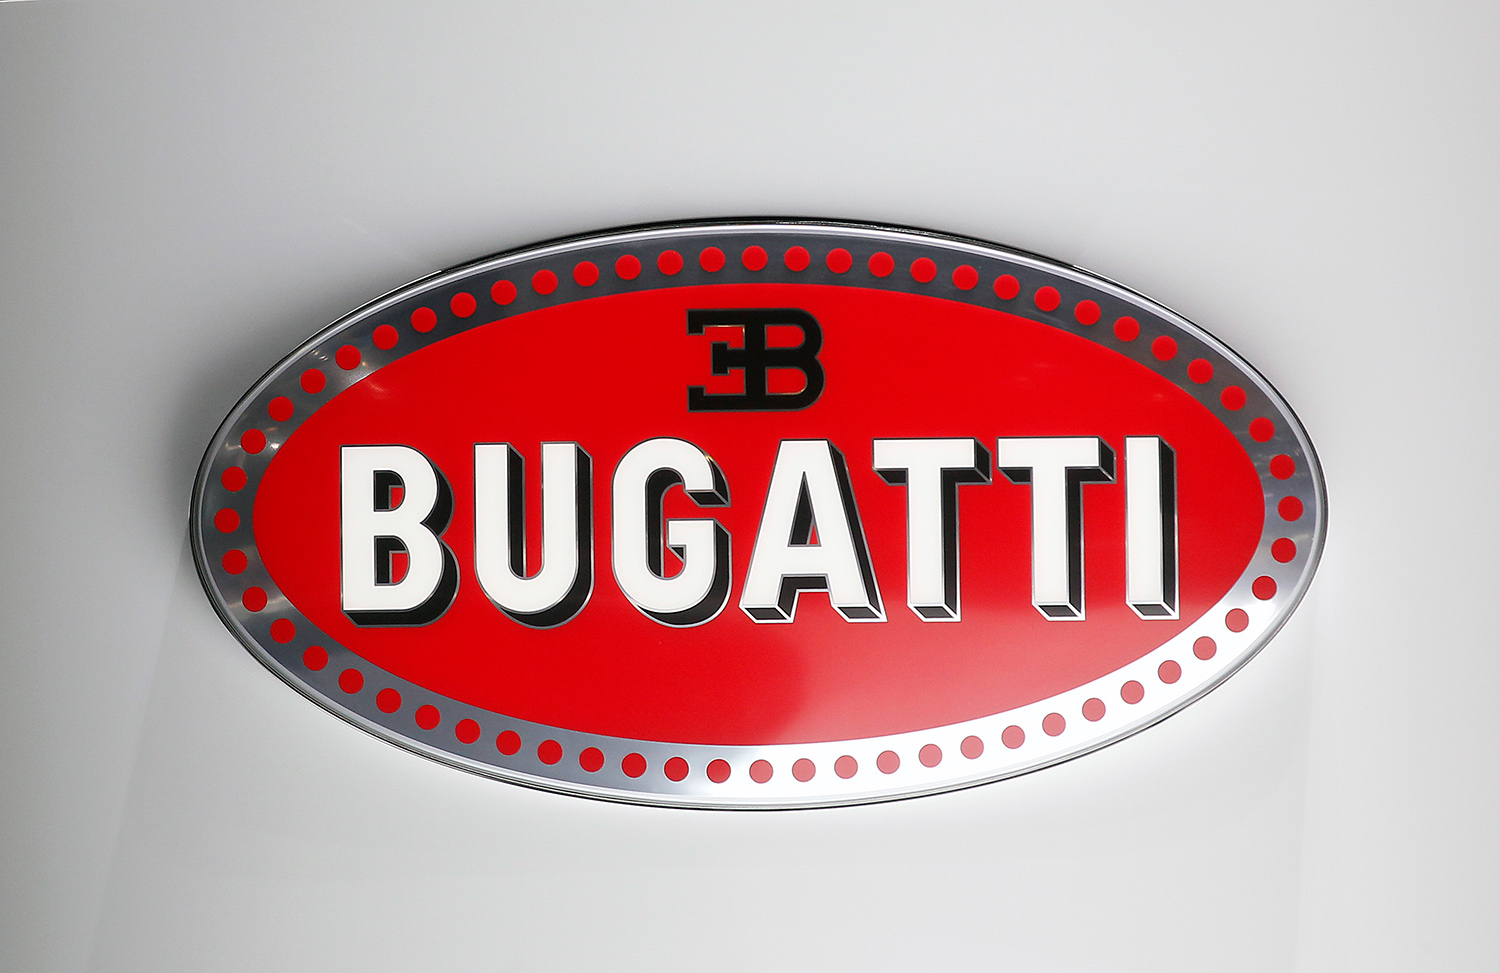 Bugatti Logo Wall Art hanging on white wall